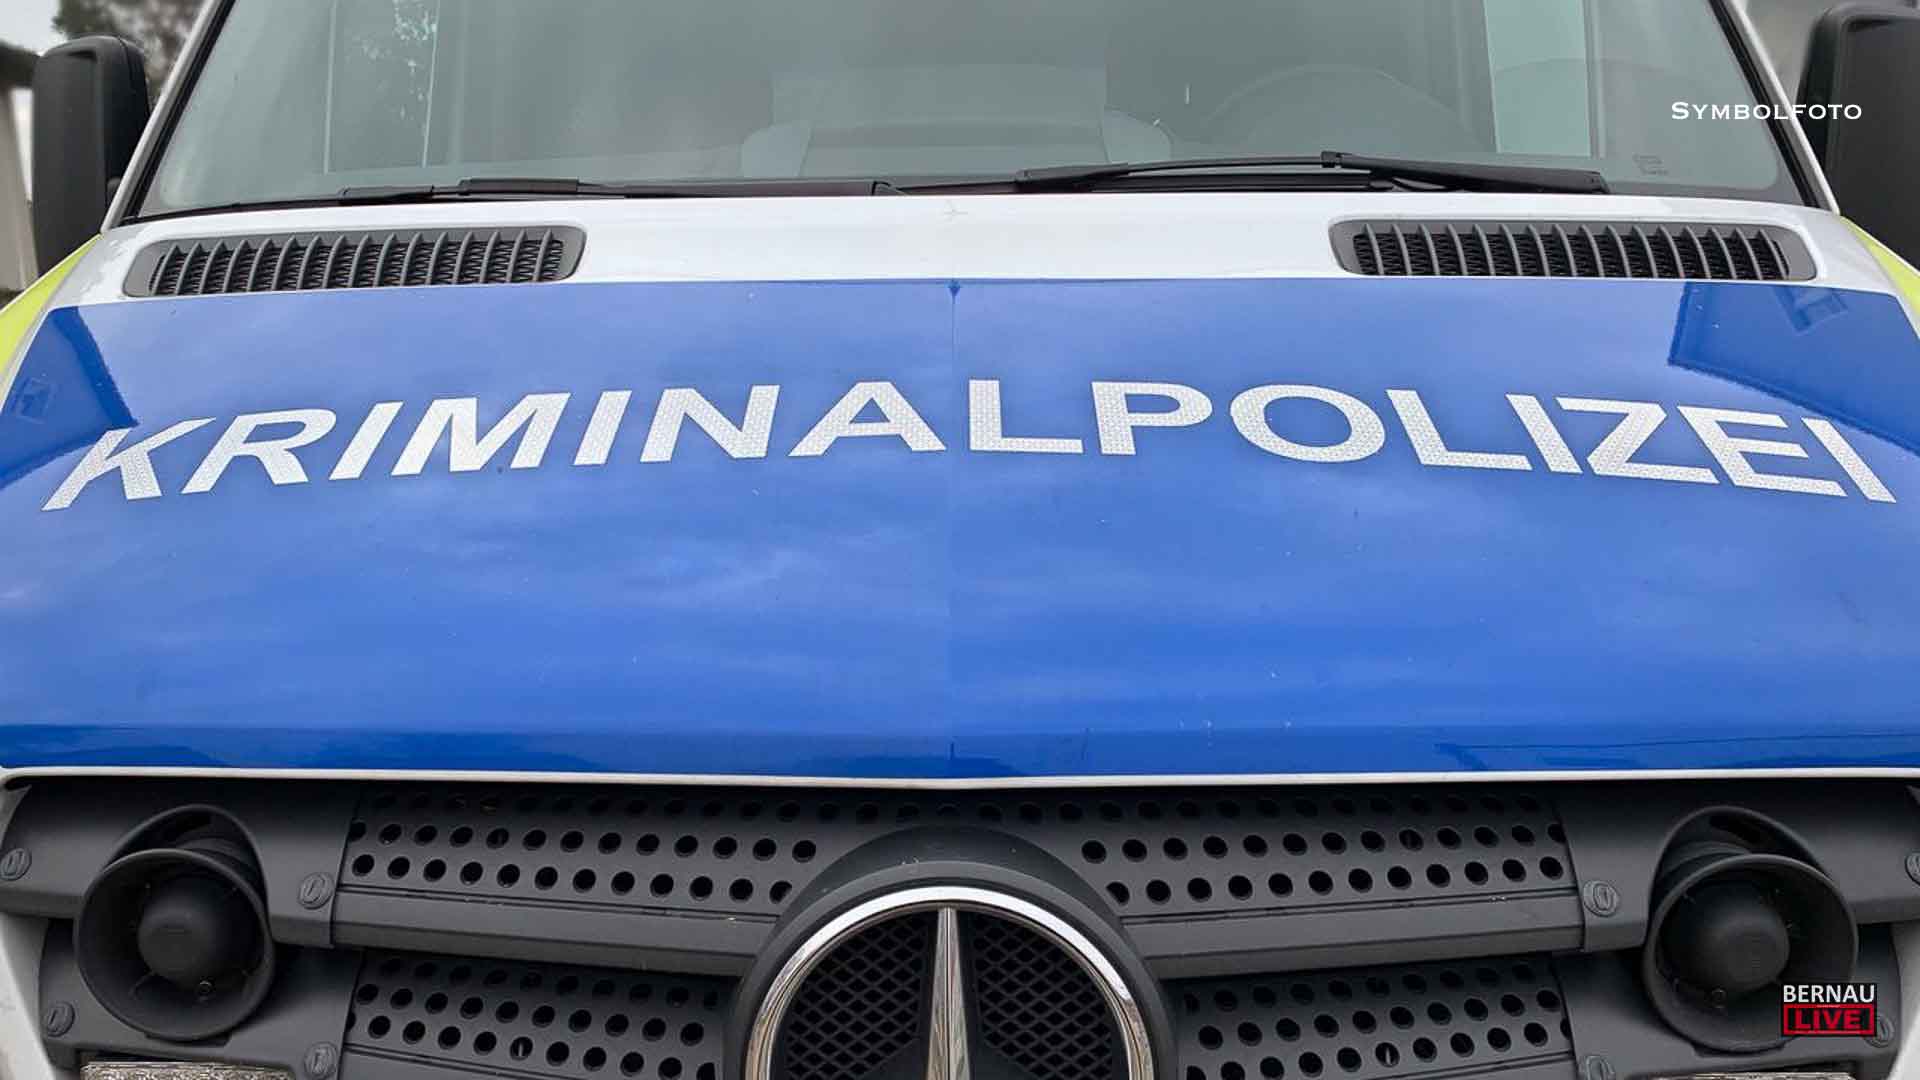 Diebstahl und Computerbetrug - Polizei in Bernau sucht nach Zeugen